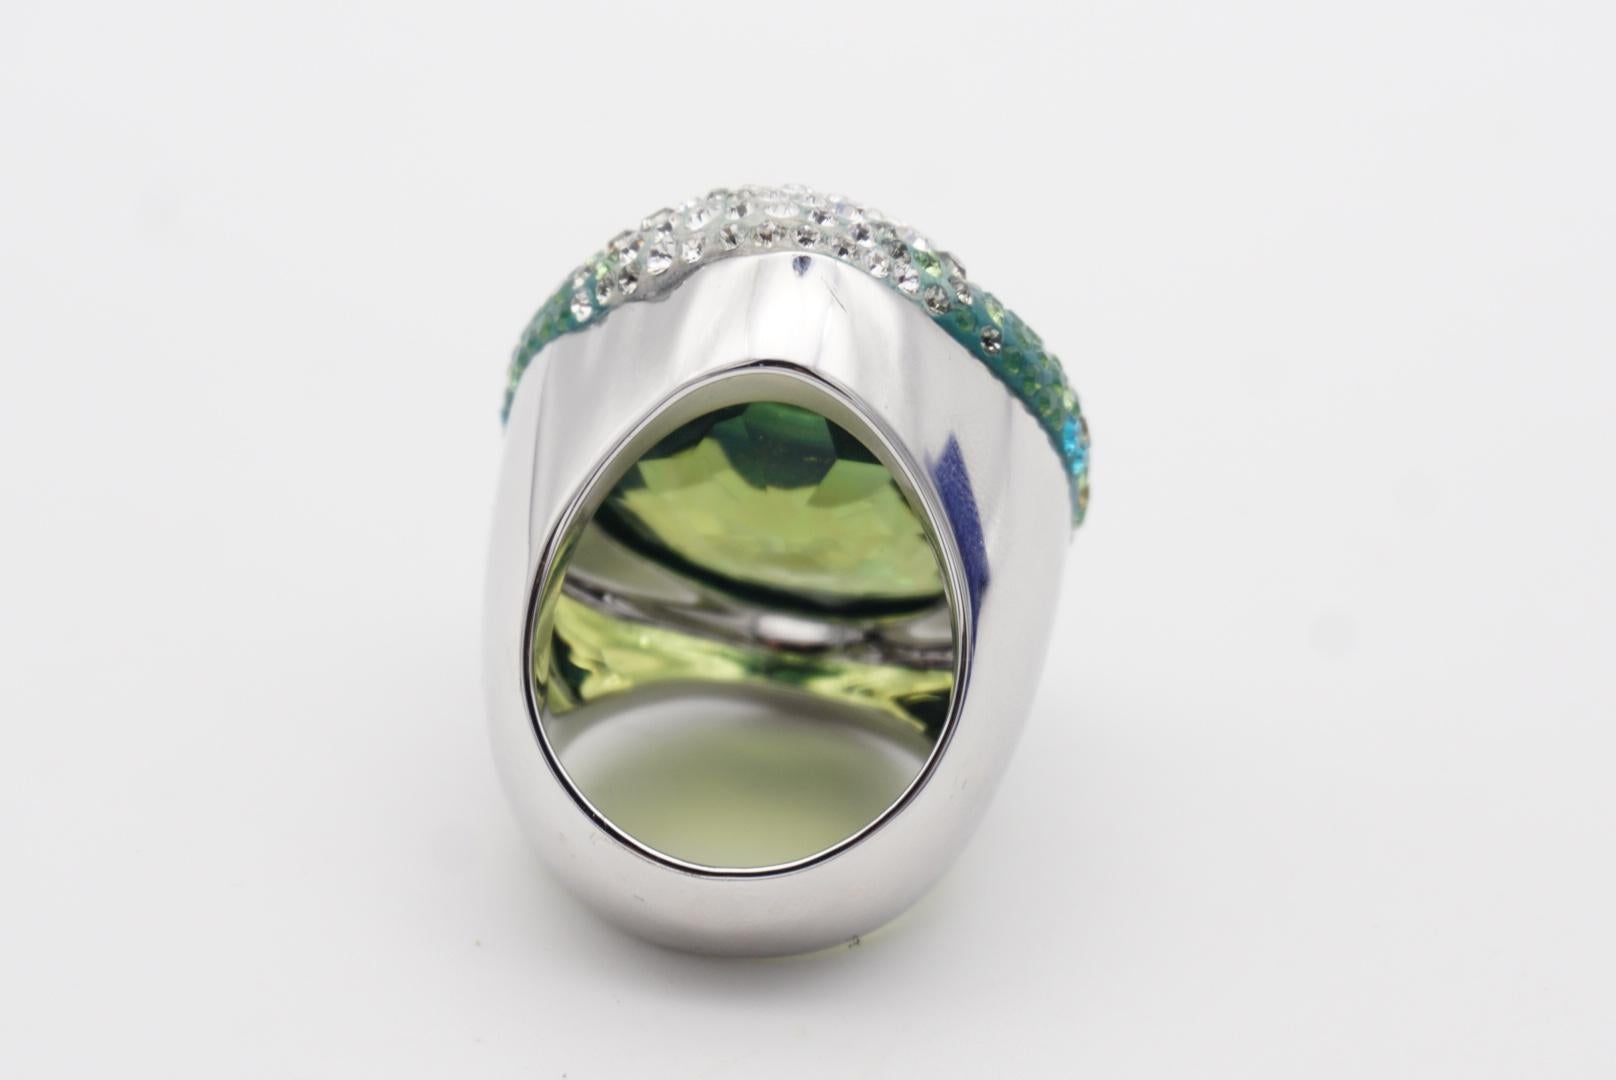 Swarovski Hyacinth Green Crystals Large Nirvana Cocktail Ring, Size N, 55, White 2